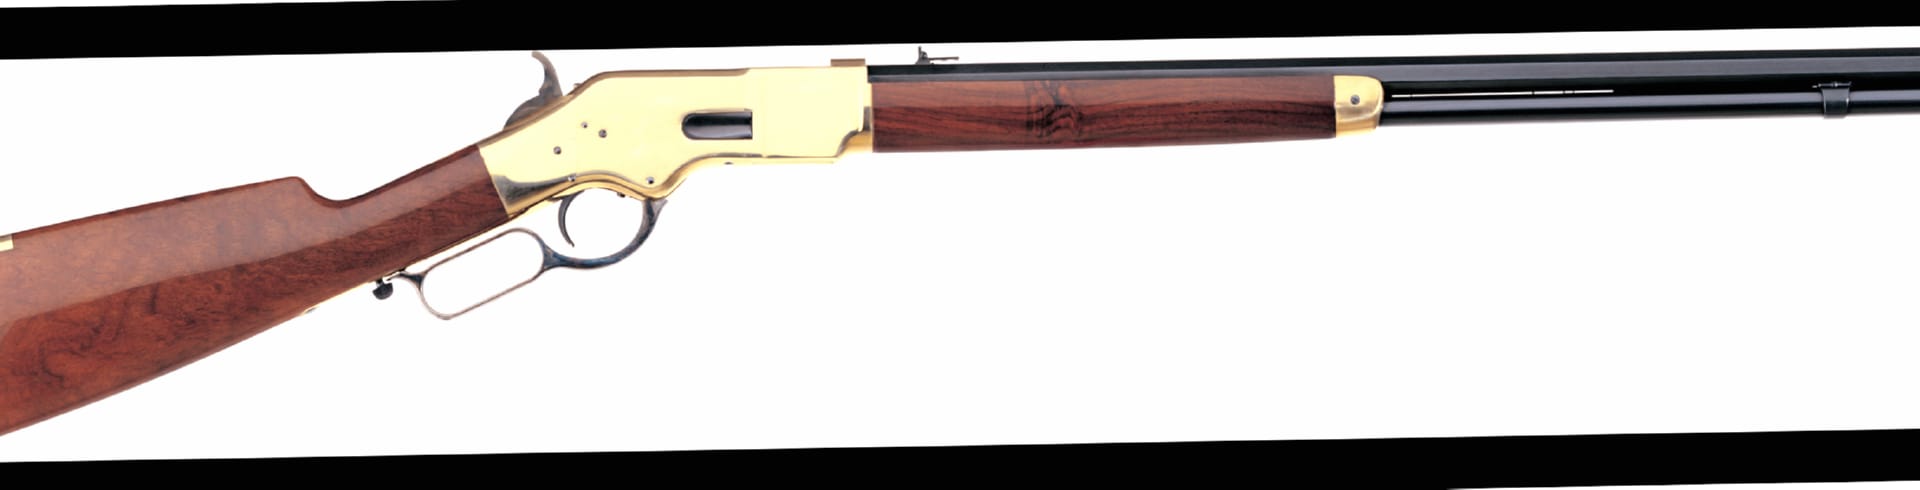 Uberti 1866 Yellowboy Rifle at 2048 x 2048 iPad size wallpapers HD quality